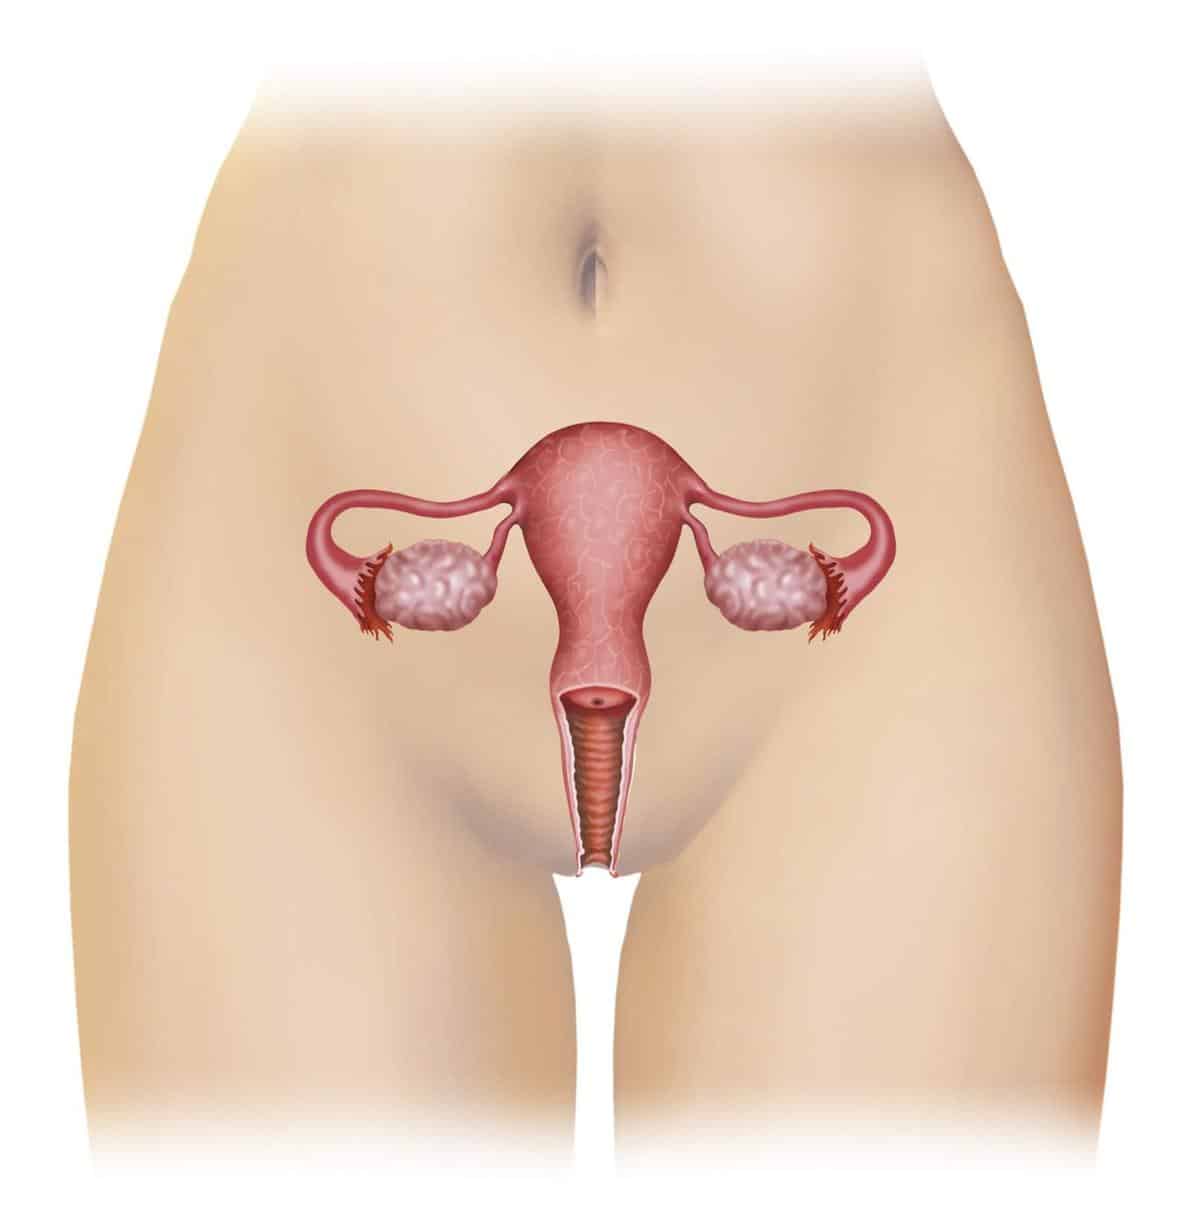 Cáncer de útero y sus síntomas ¿Cómo sospecharlo?